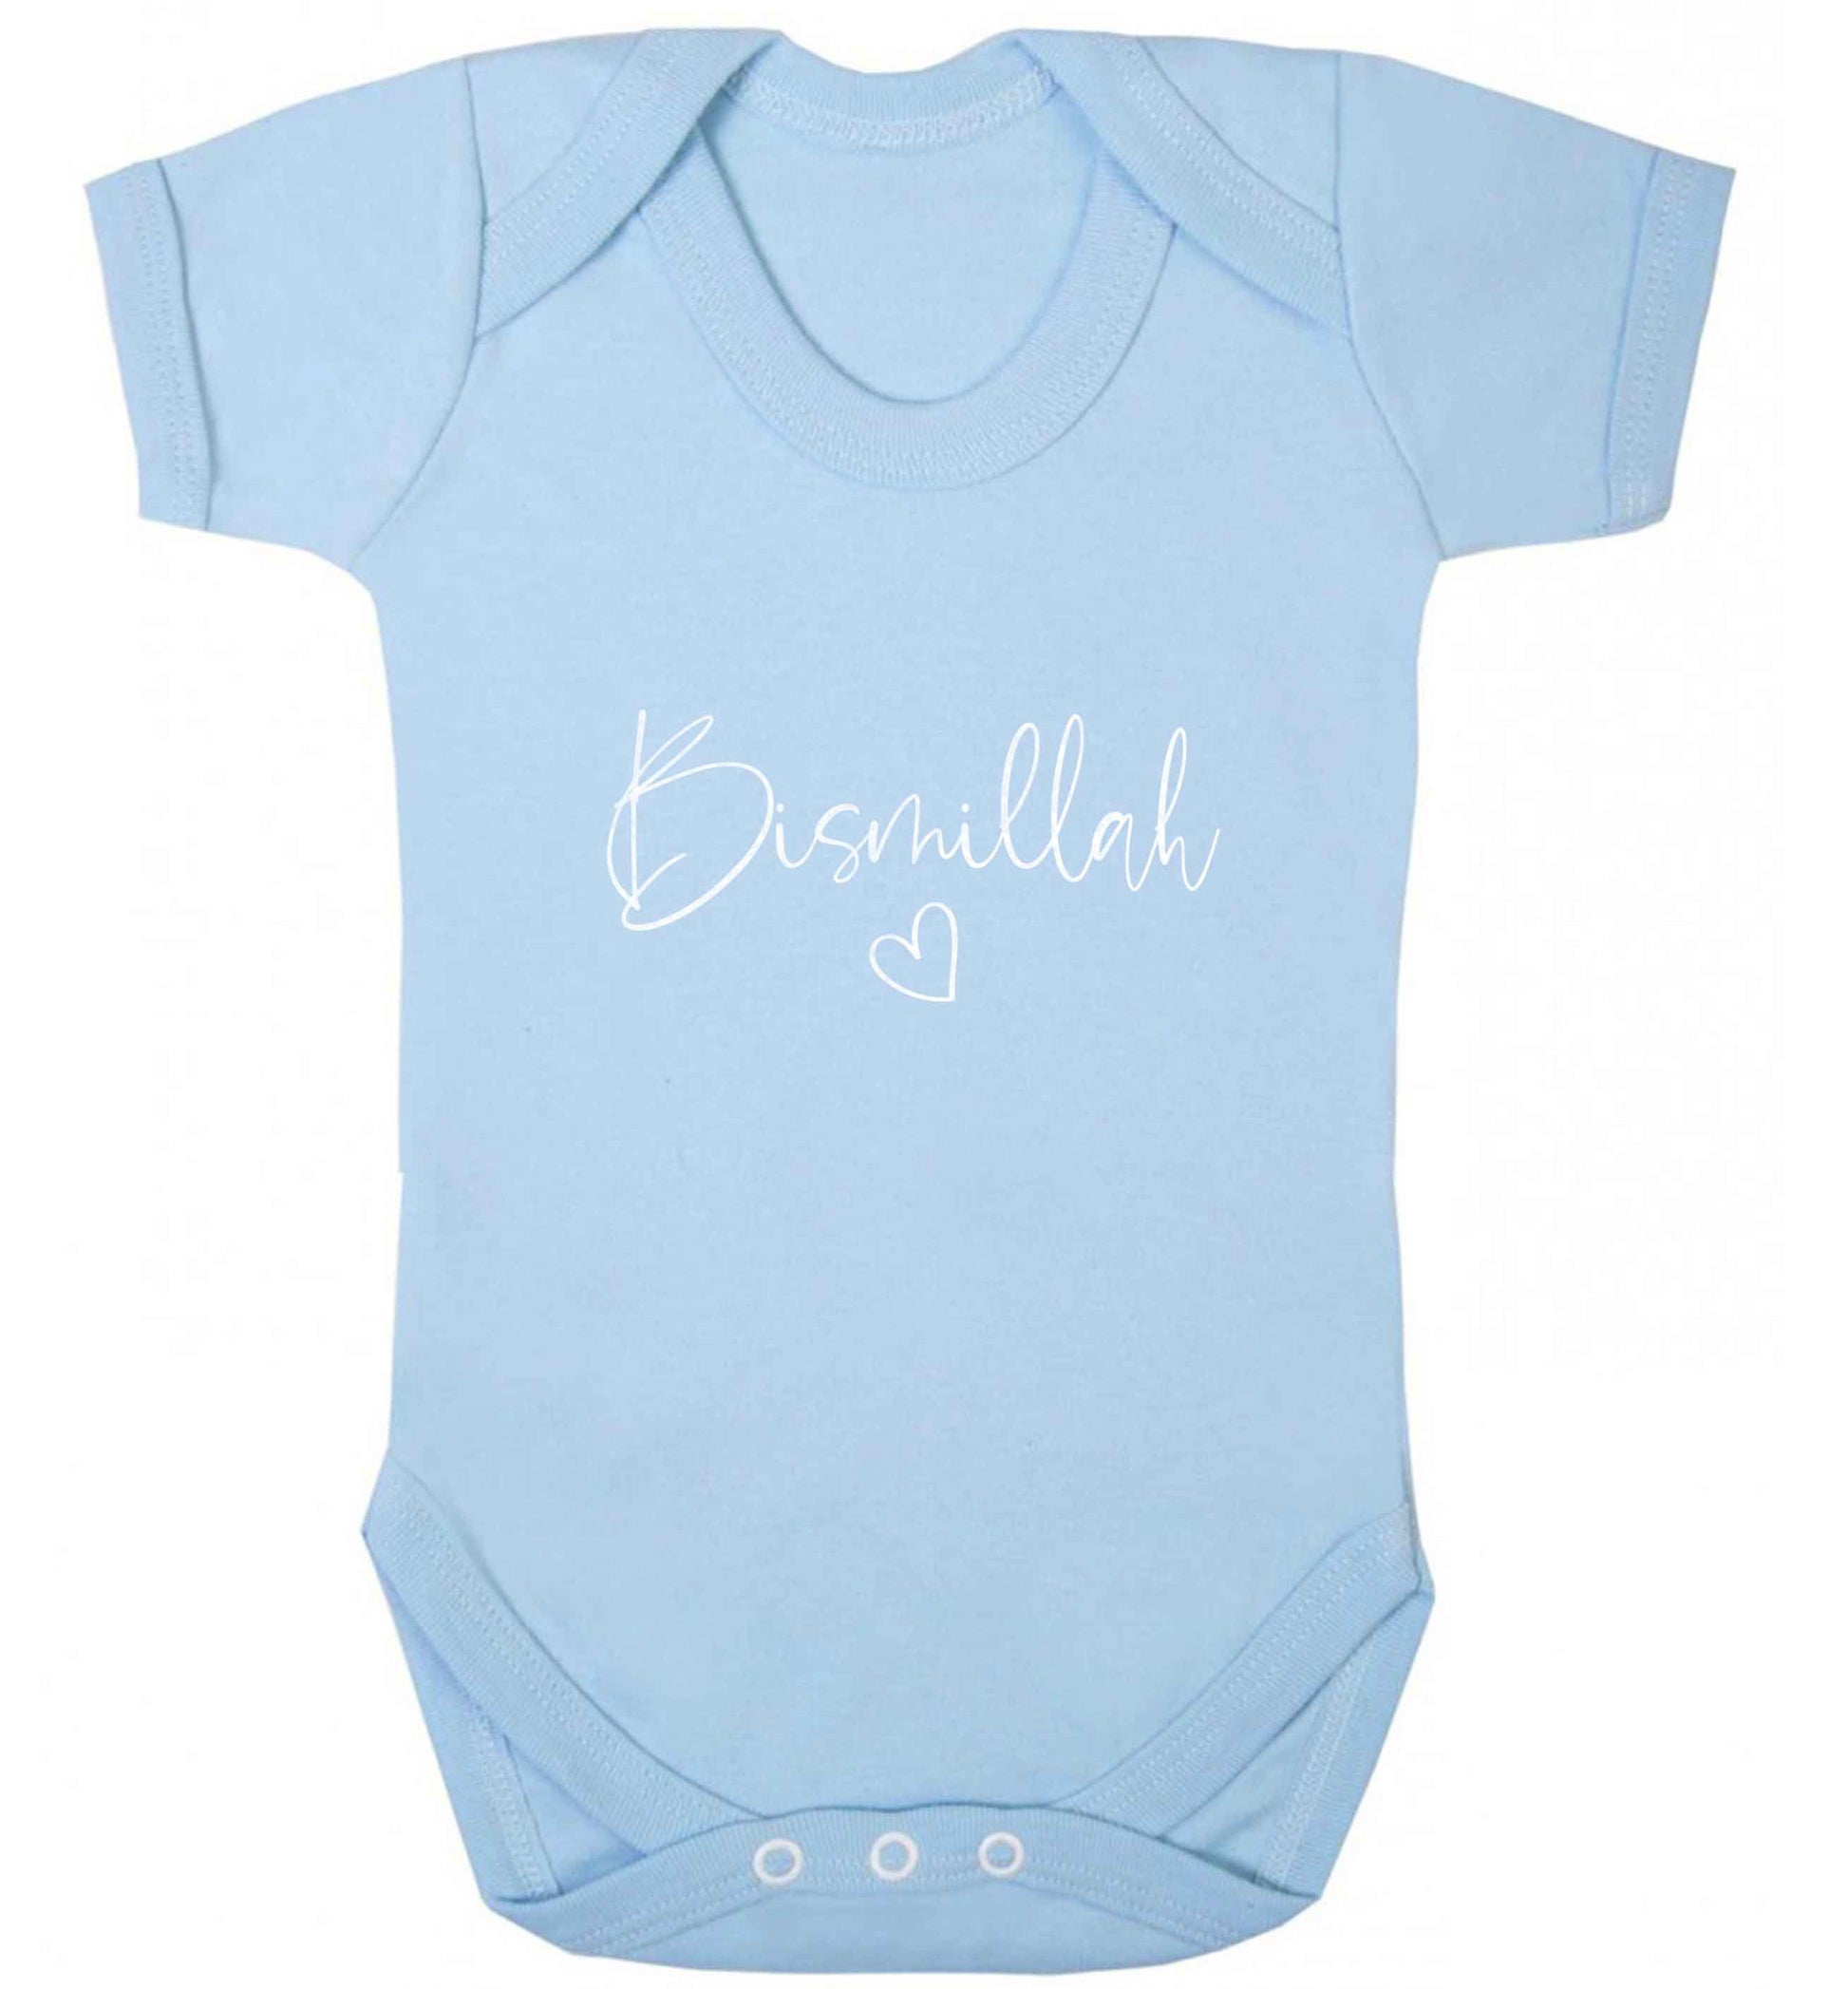 Bismillah baby vest pale blue 18-24 months